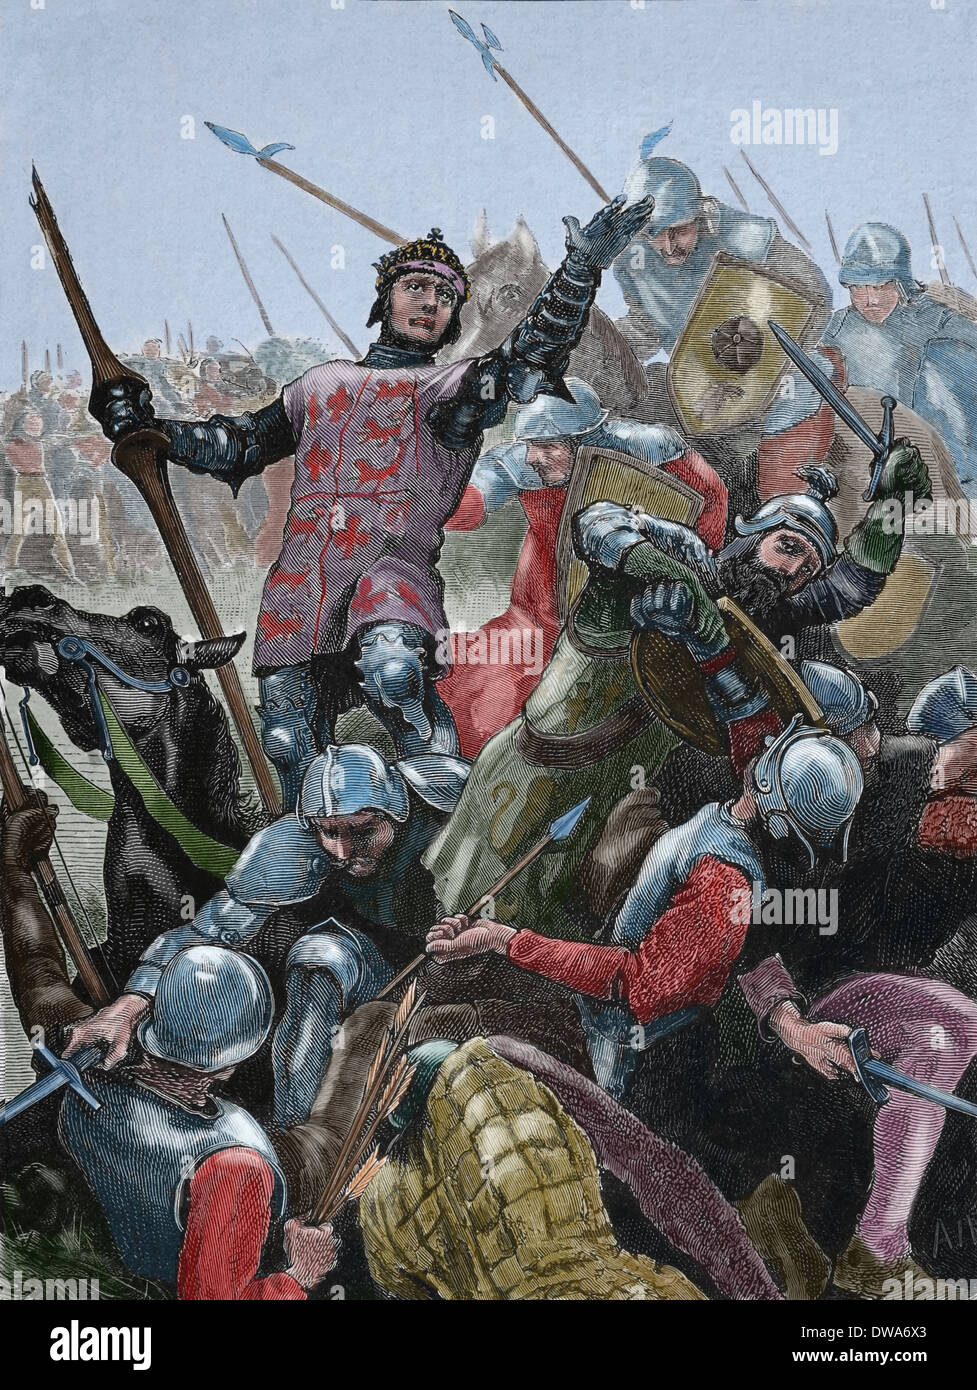 Richard III d'Angleterre (1452-1485). Roi d'Angleterre (1484-1485). La mort dans la bataille de Bosworth Field. Gravure.Couleur. Banque D'Images